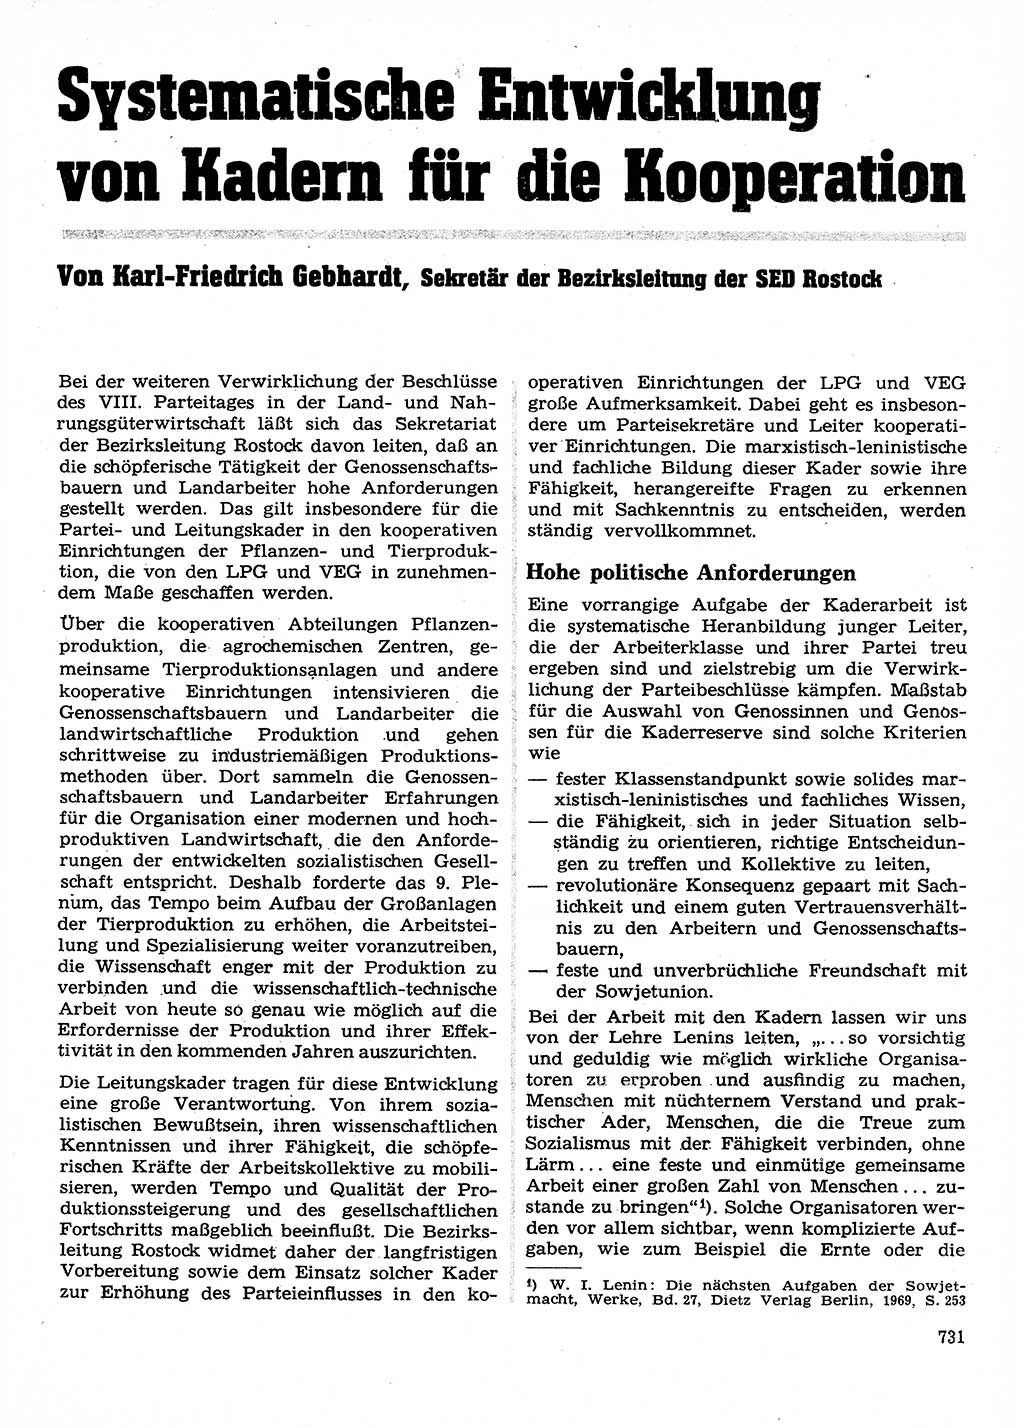 Neuer Weg (NW), Organ des Zentralkomitees (ZK) der SED (Sozialistische Einheitspartei Deutschlands) für Fragen des Parteilebens, 28. Jahrgang [Deutsche Demokratische Republik (DDR)] 1973, Seite 731 (NW ZK SED DDR 1973, S. 731)